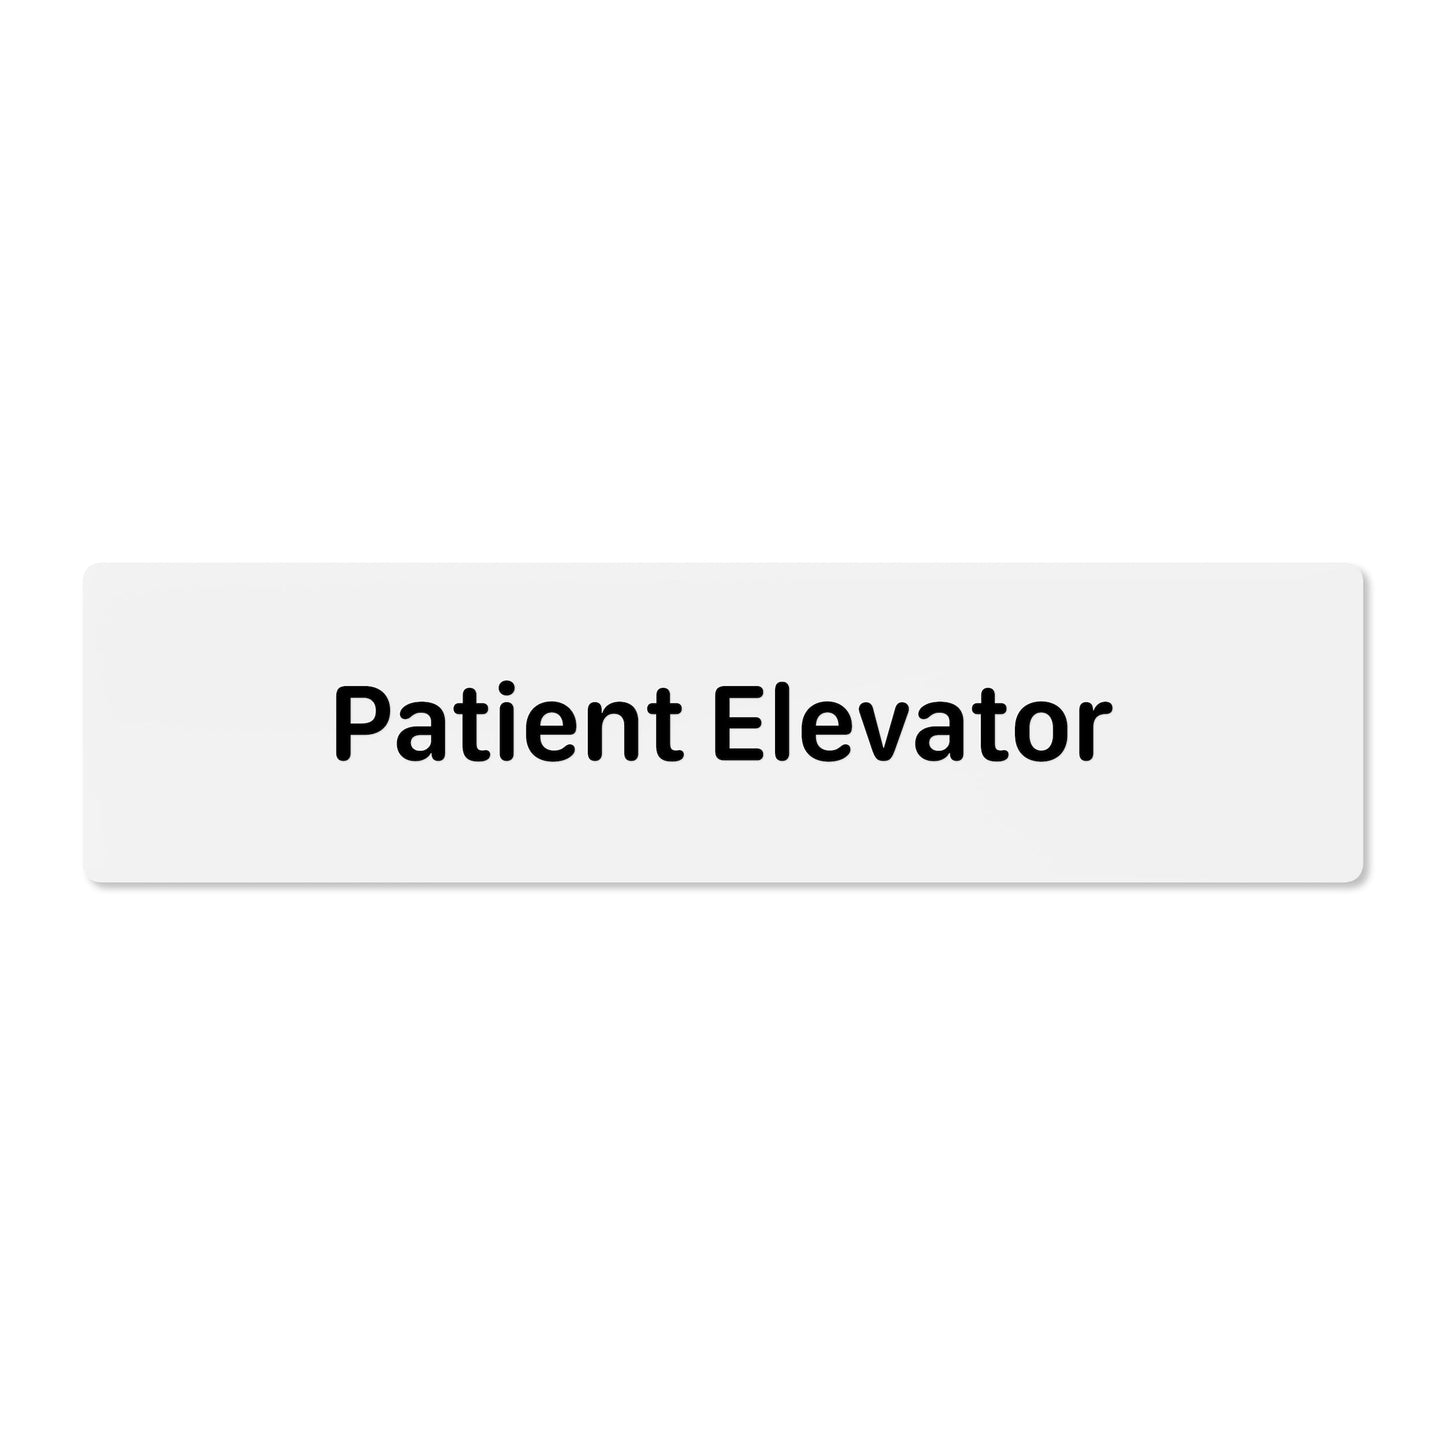 Patient Elevator